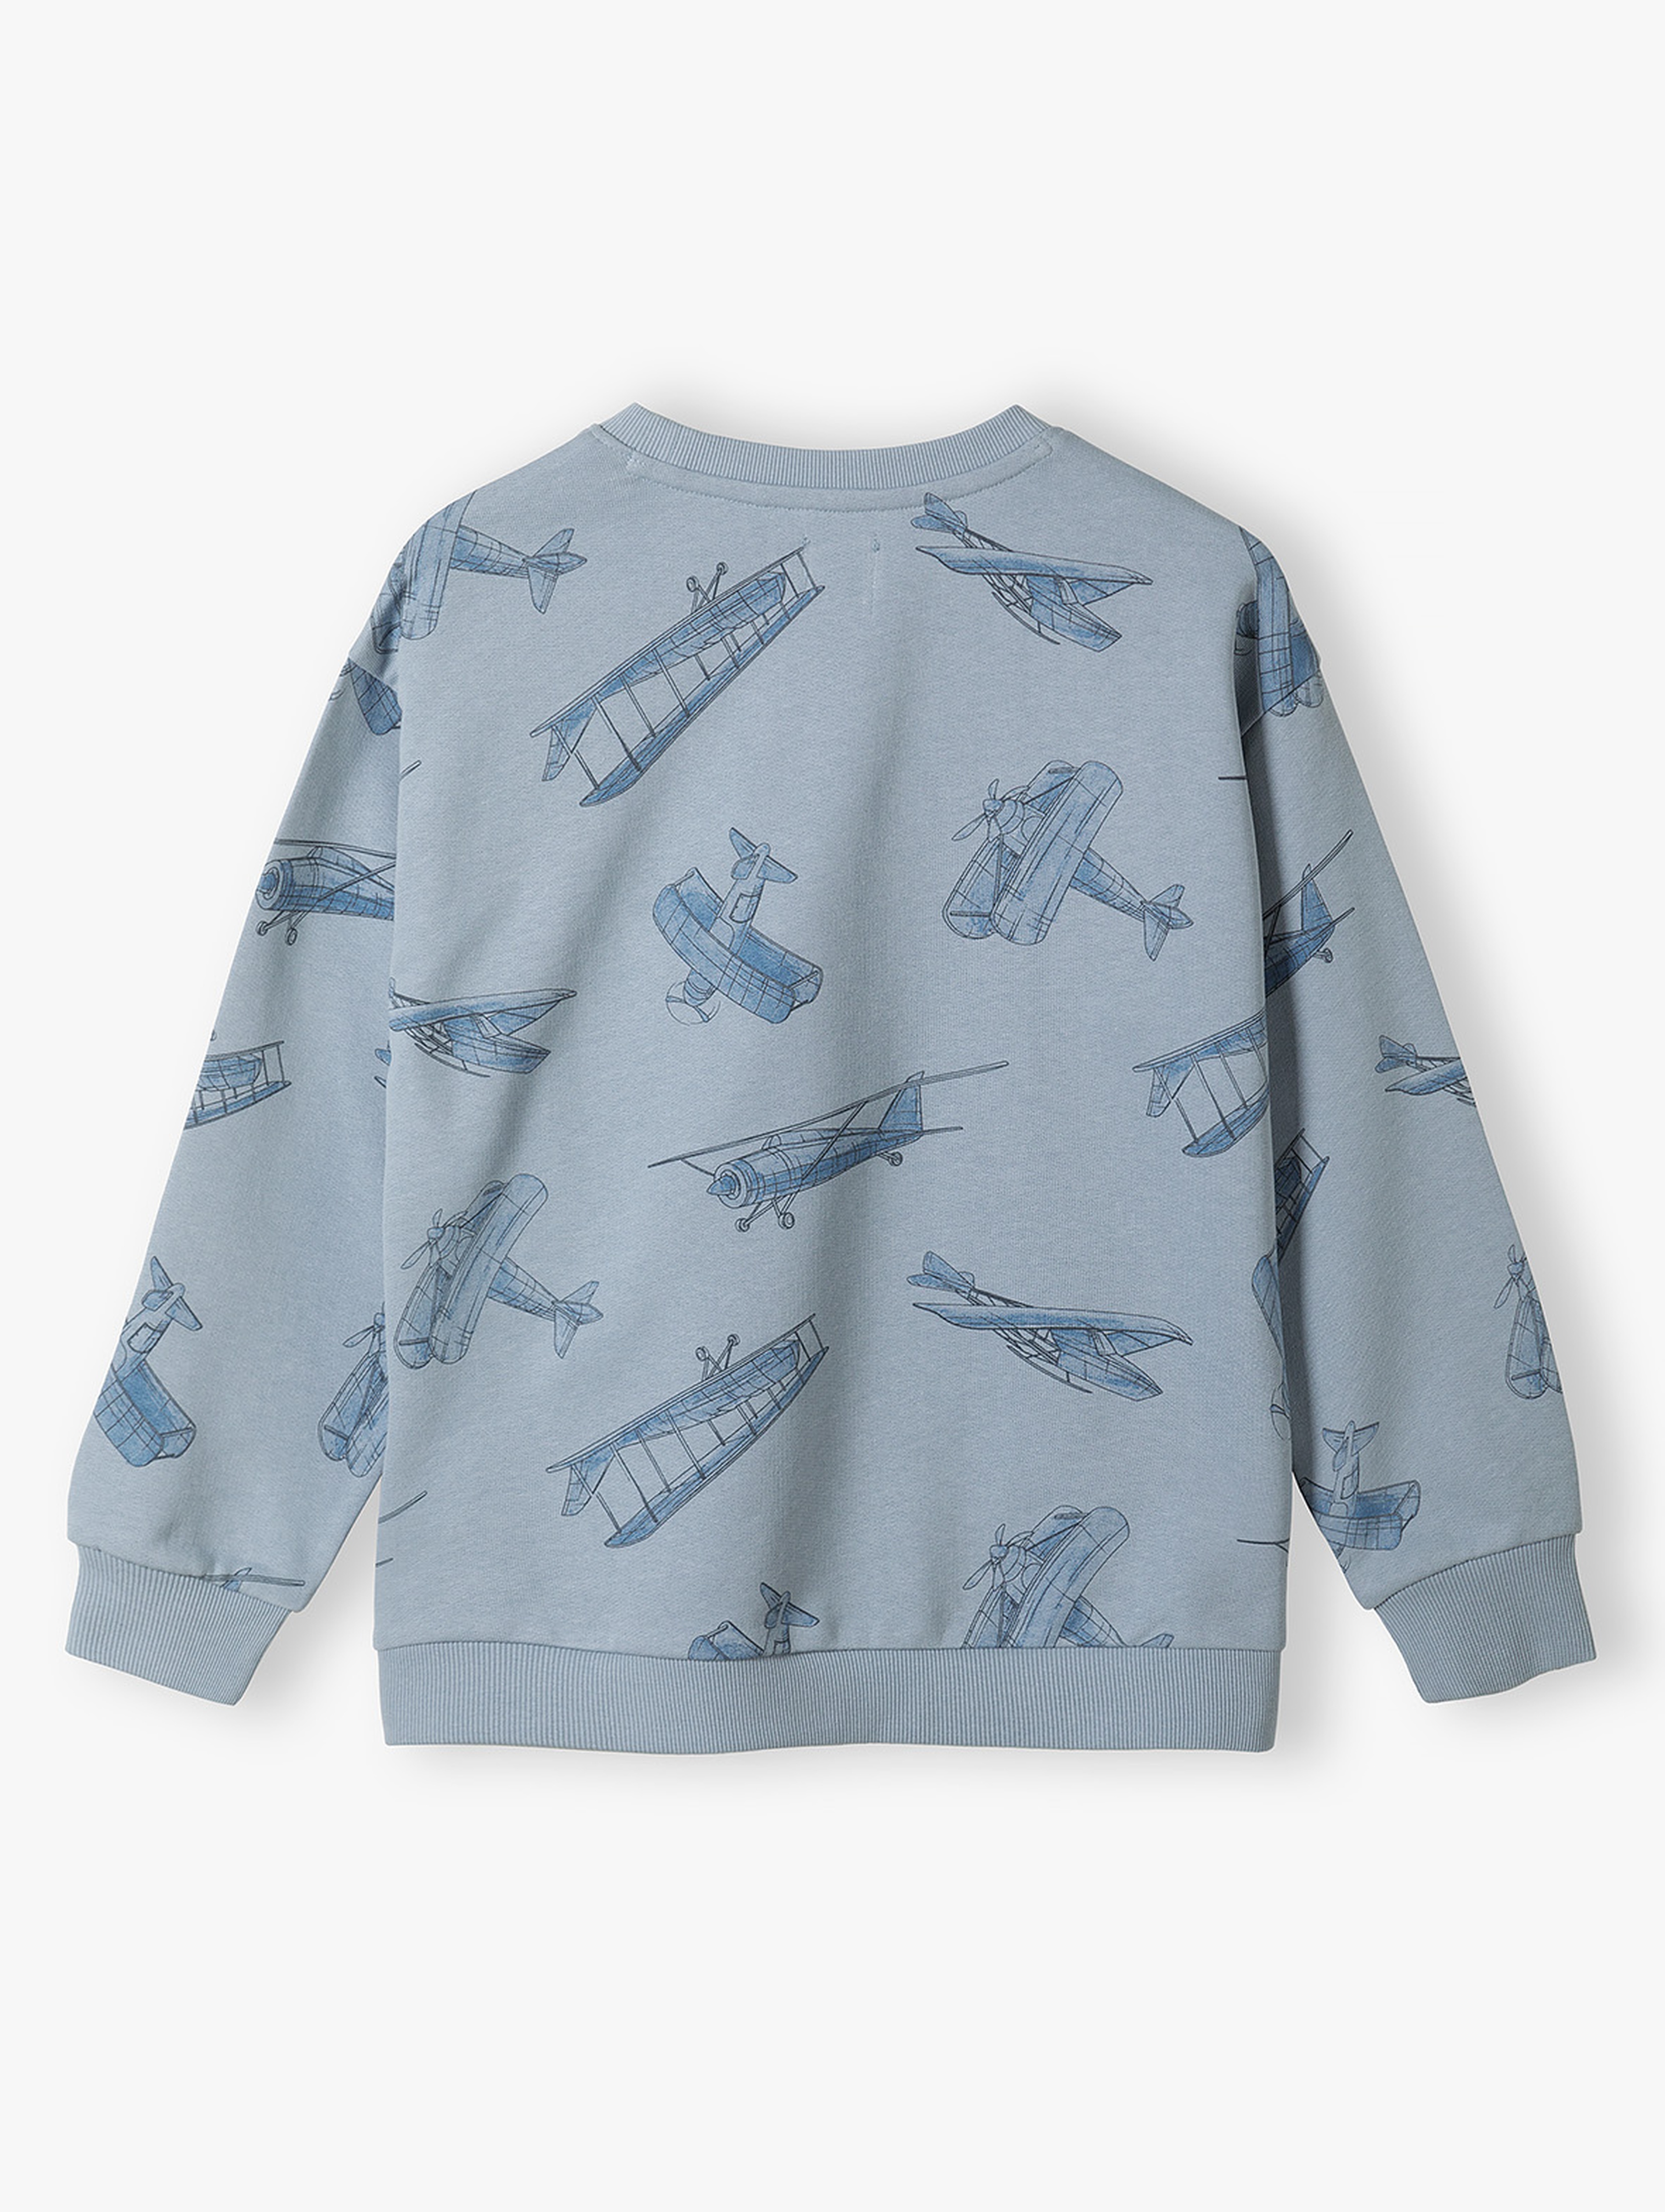 Bluza dresowa niebieska w samoloty - Limited Edition